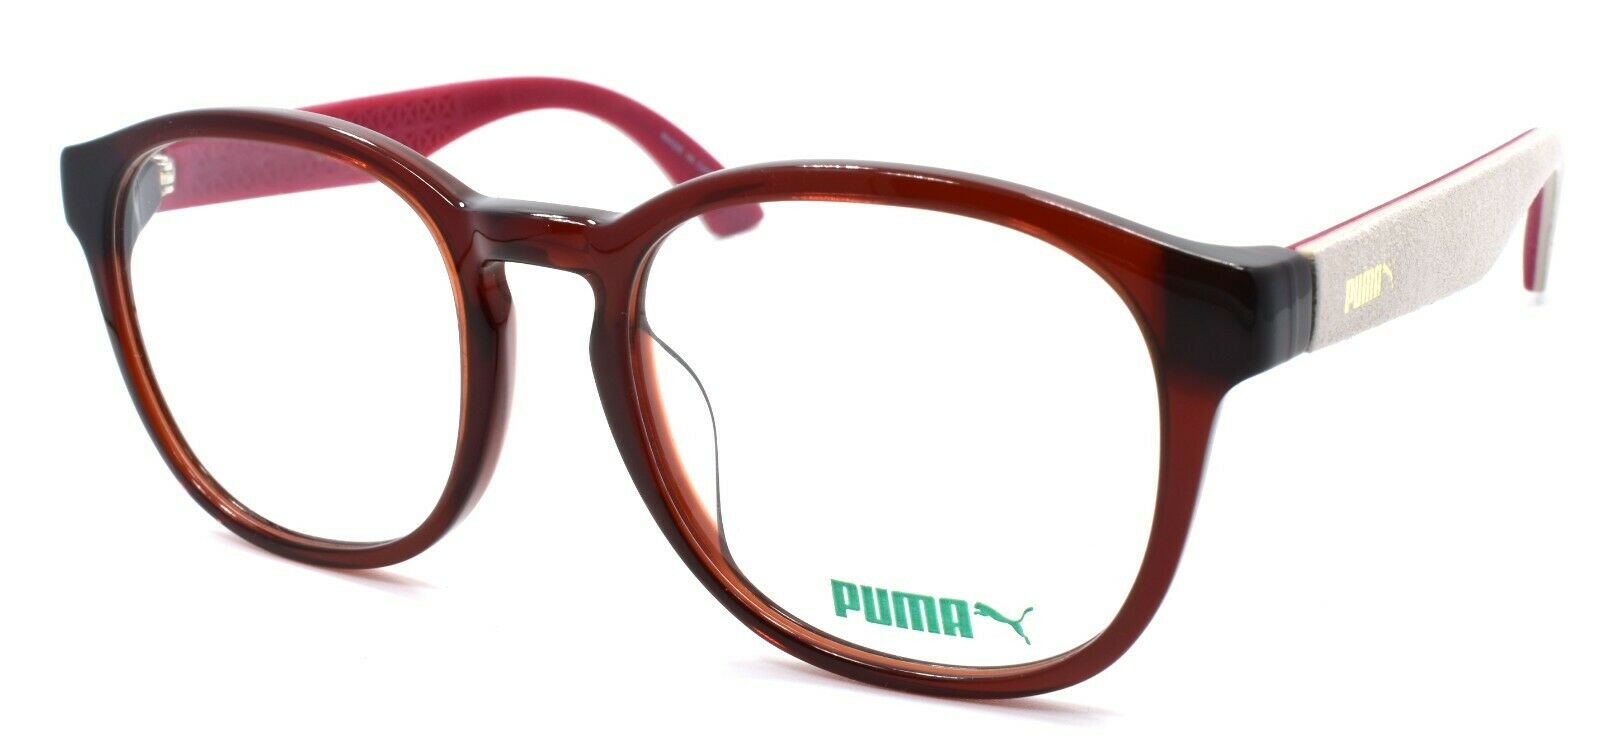 1-PUMA PU0043OA 012 Unisex Eyeglasses Frames 53-20-140 Red w/ Suede Trim-889652015279-IKSpecs